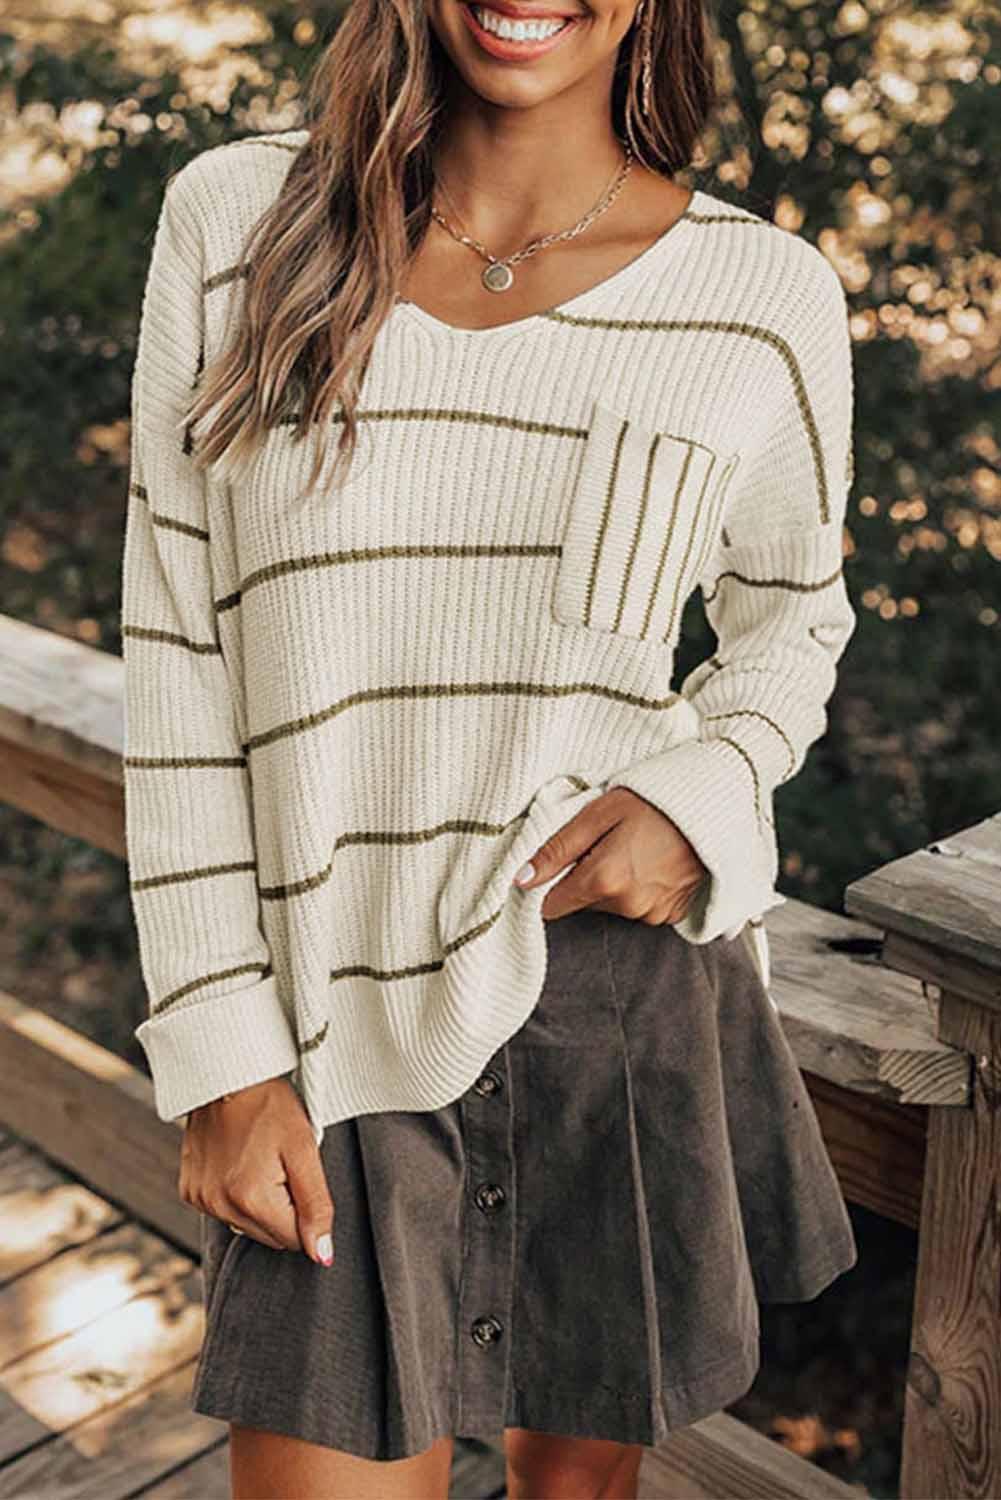 Stripe Chest Pocket Striped Sweater - L & M Kee, LLC